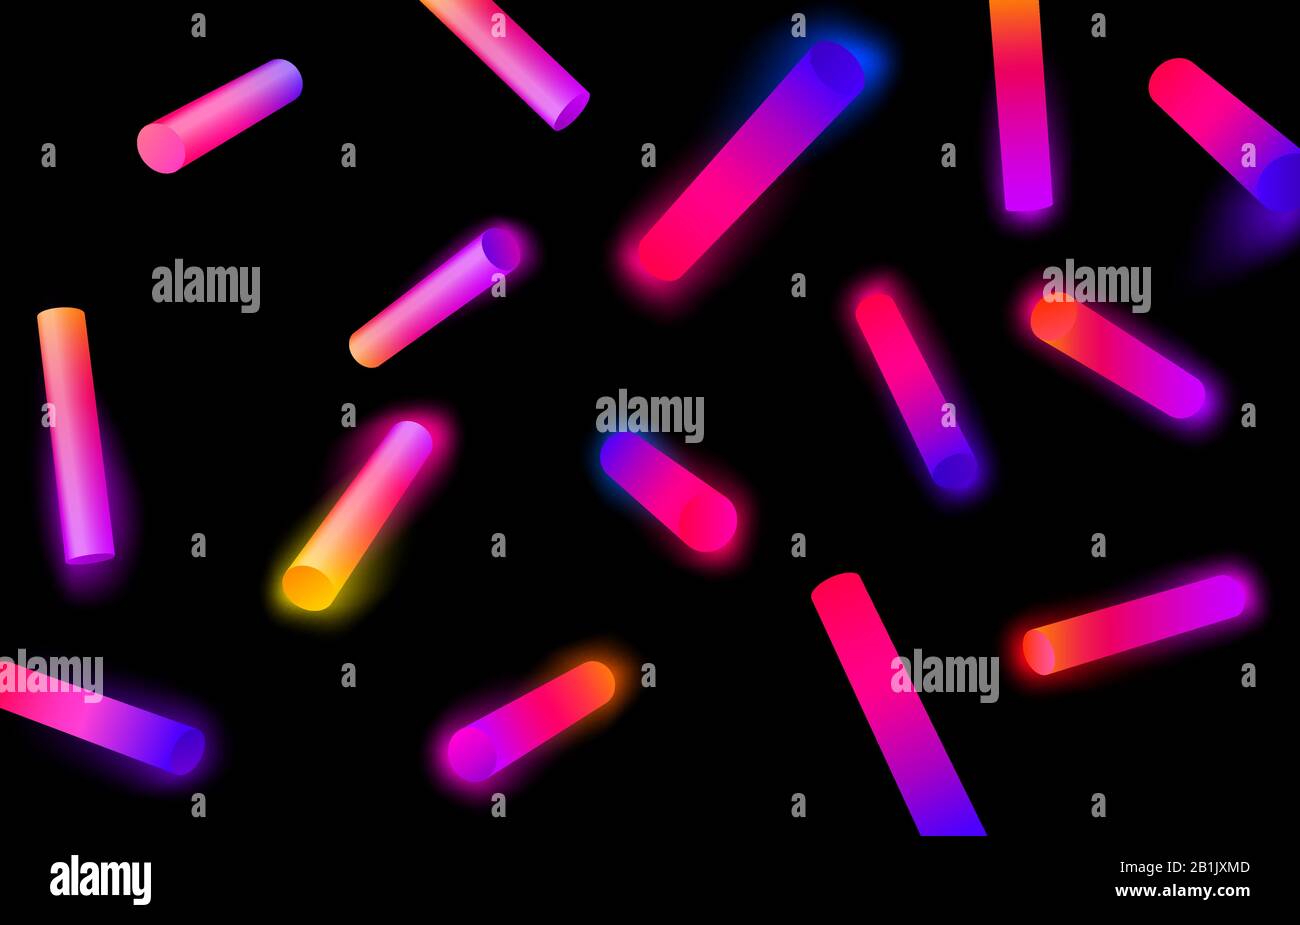 Abstrakte geometrische Formen mit Verläufen. Neon-Zylinder-Form, farbenfrohe verglühte 3D-Objekte und Neonleuchtenlampen Vektor-Hintergrund-Abbildung Stock Vektor